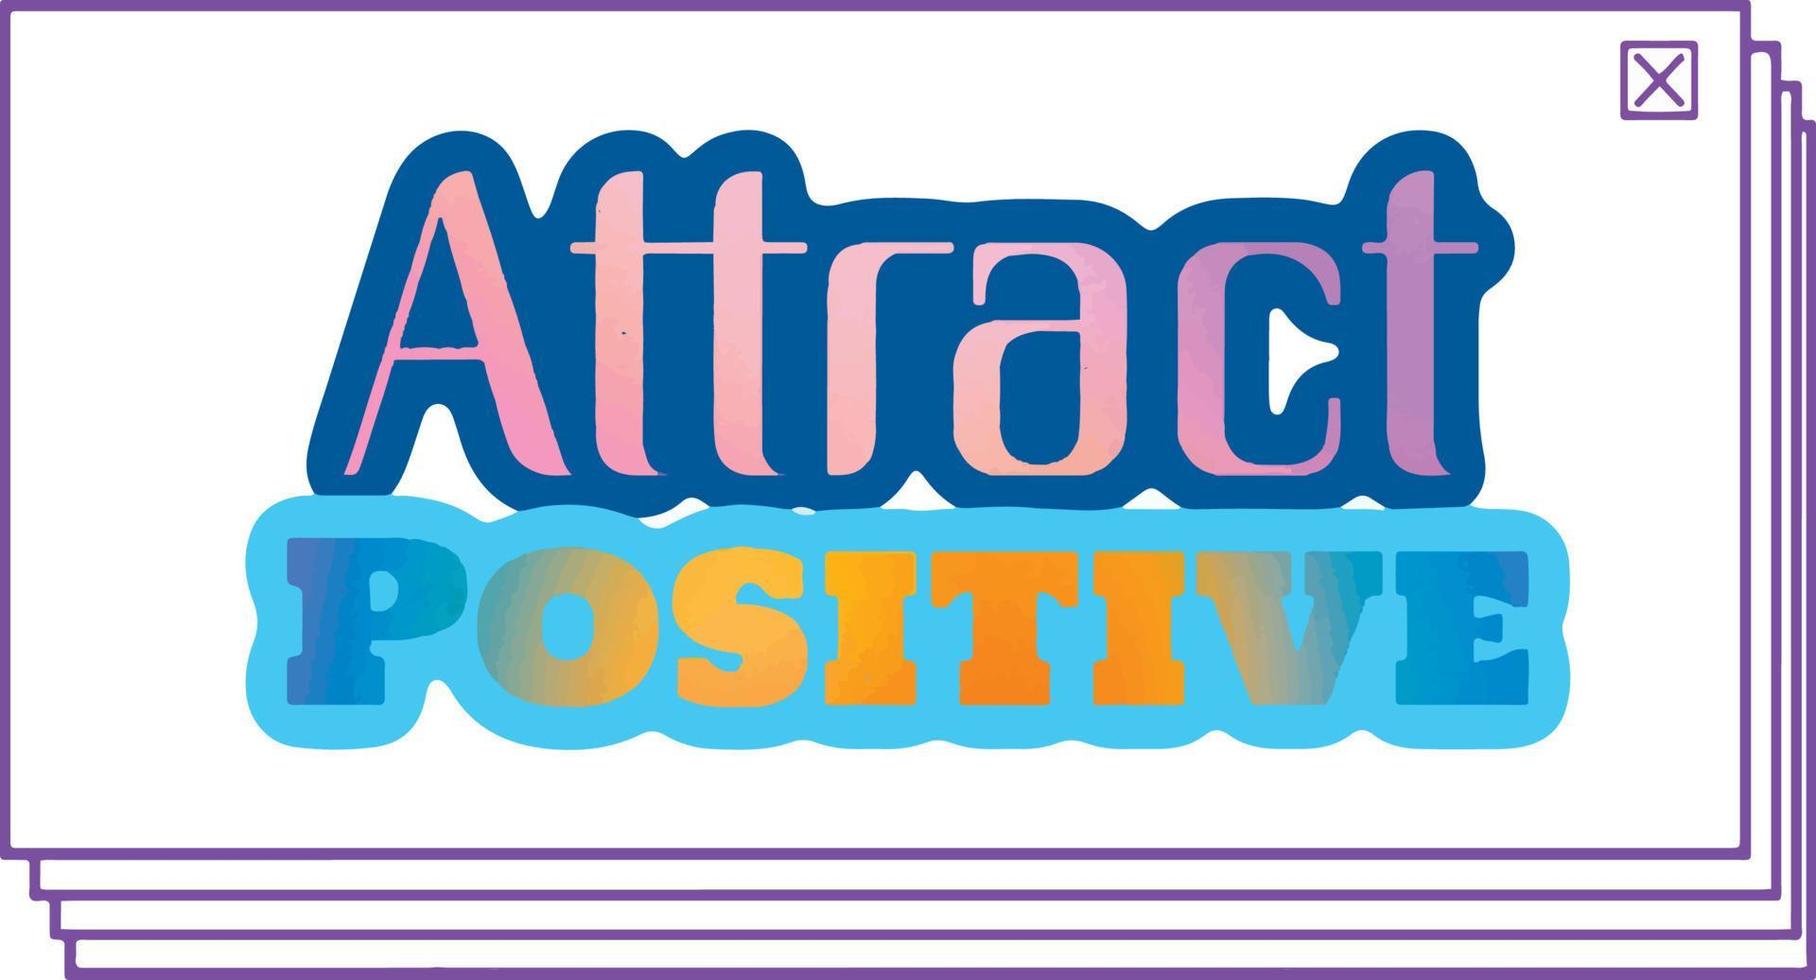 attirare positivo. positivo motivazionale frasi, icona, slogan, etichetta, sfondo, telaio, testo, lettering vettore